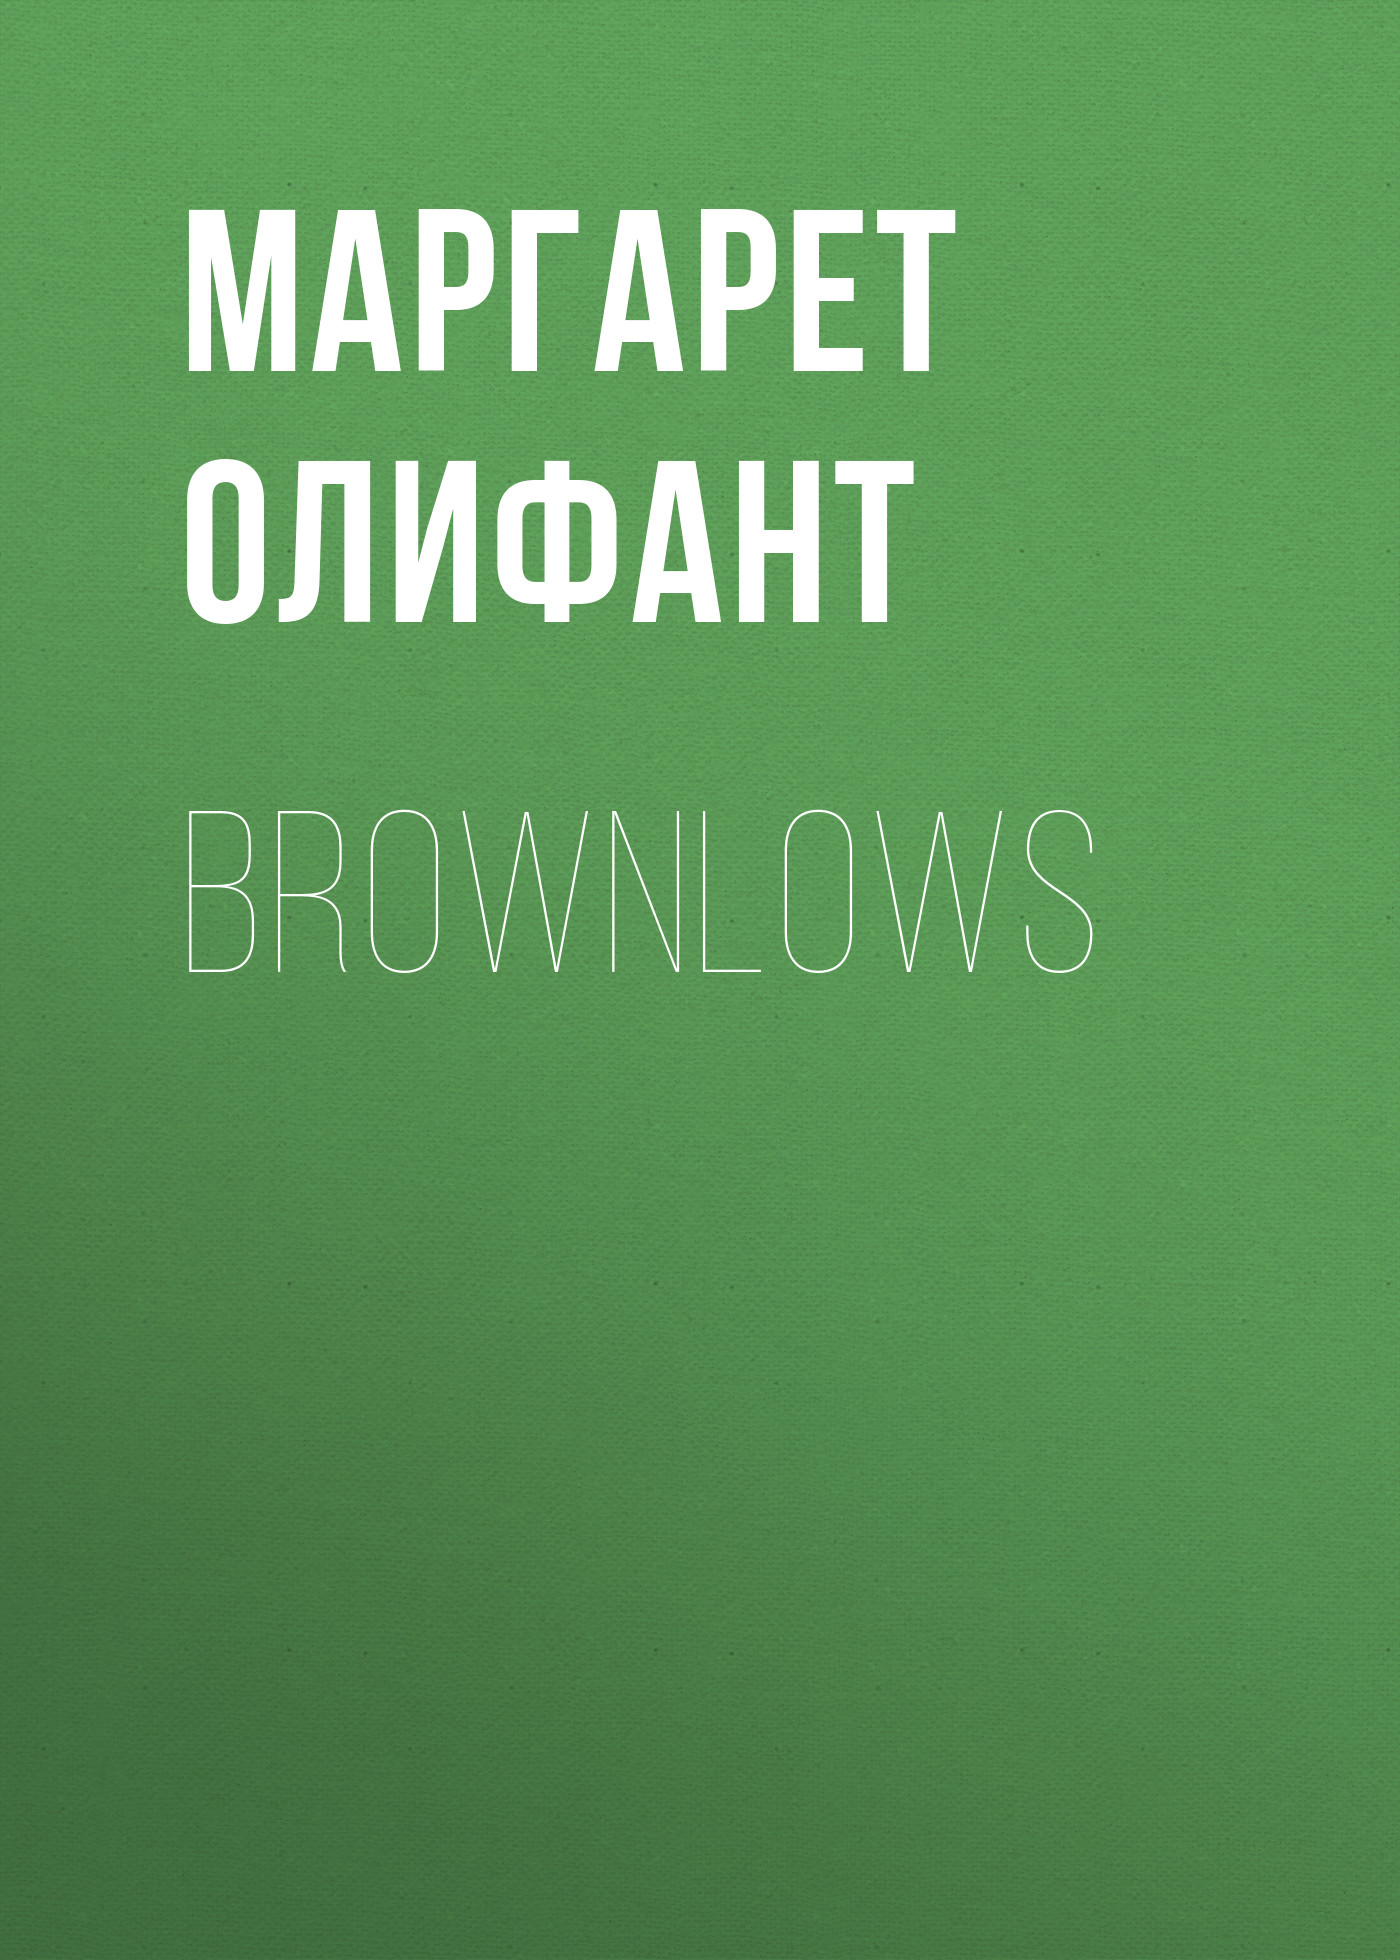 Книга Brownlows из серии , созданная Маргарет Олифант, может относится к жанру Зарубежная классика, Литература 19 века, Зарубежная старинная литература. Стоимость электронной книги Brownlows с идентификатором 34842702 составляет 0 руб.